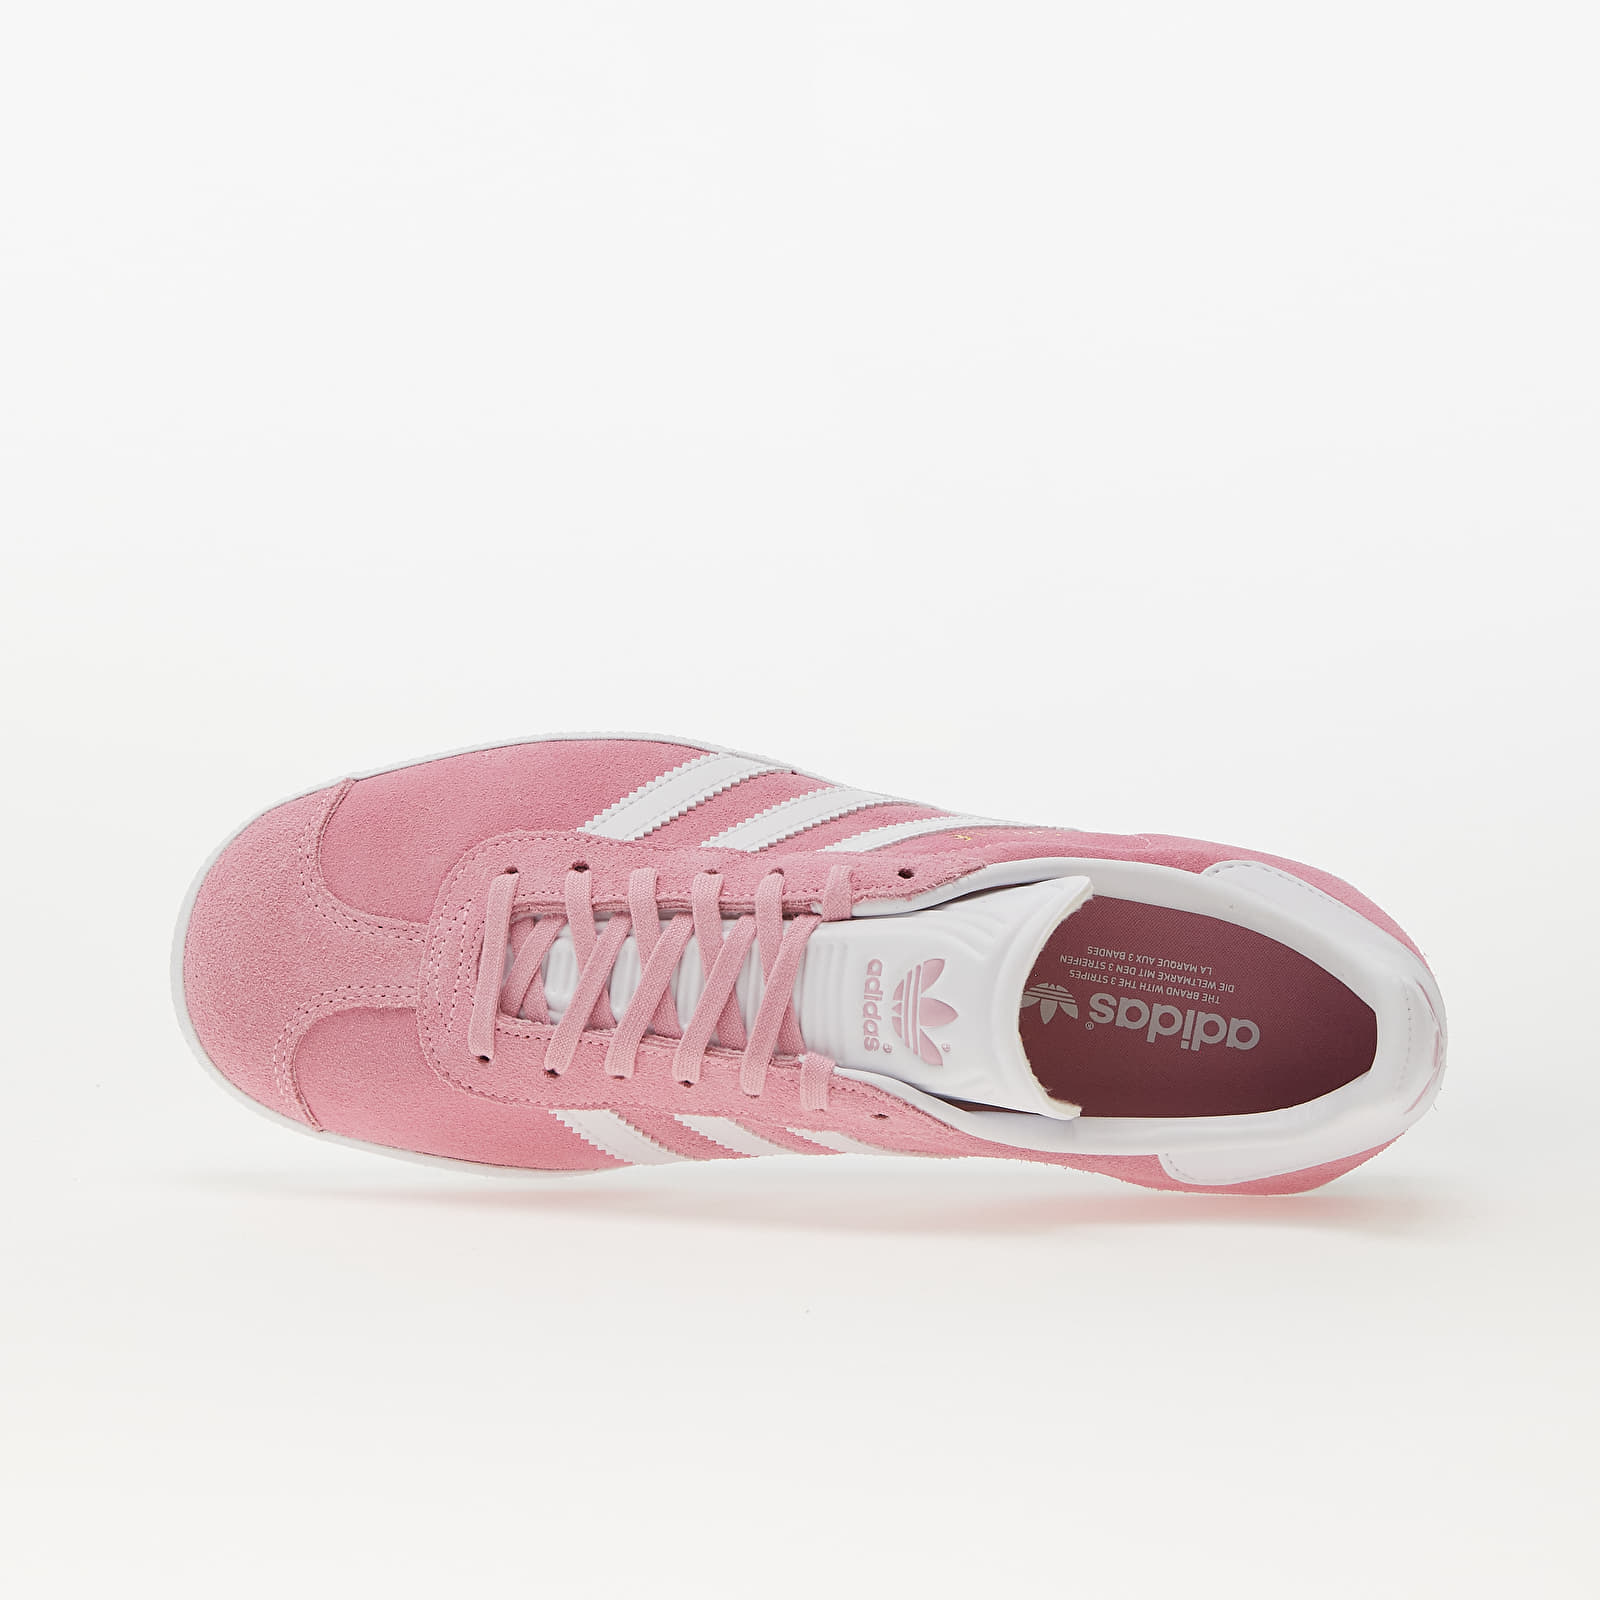 adidas gazelle white pink stripes